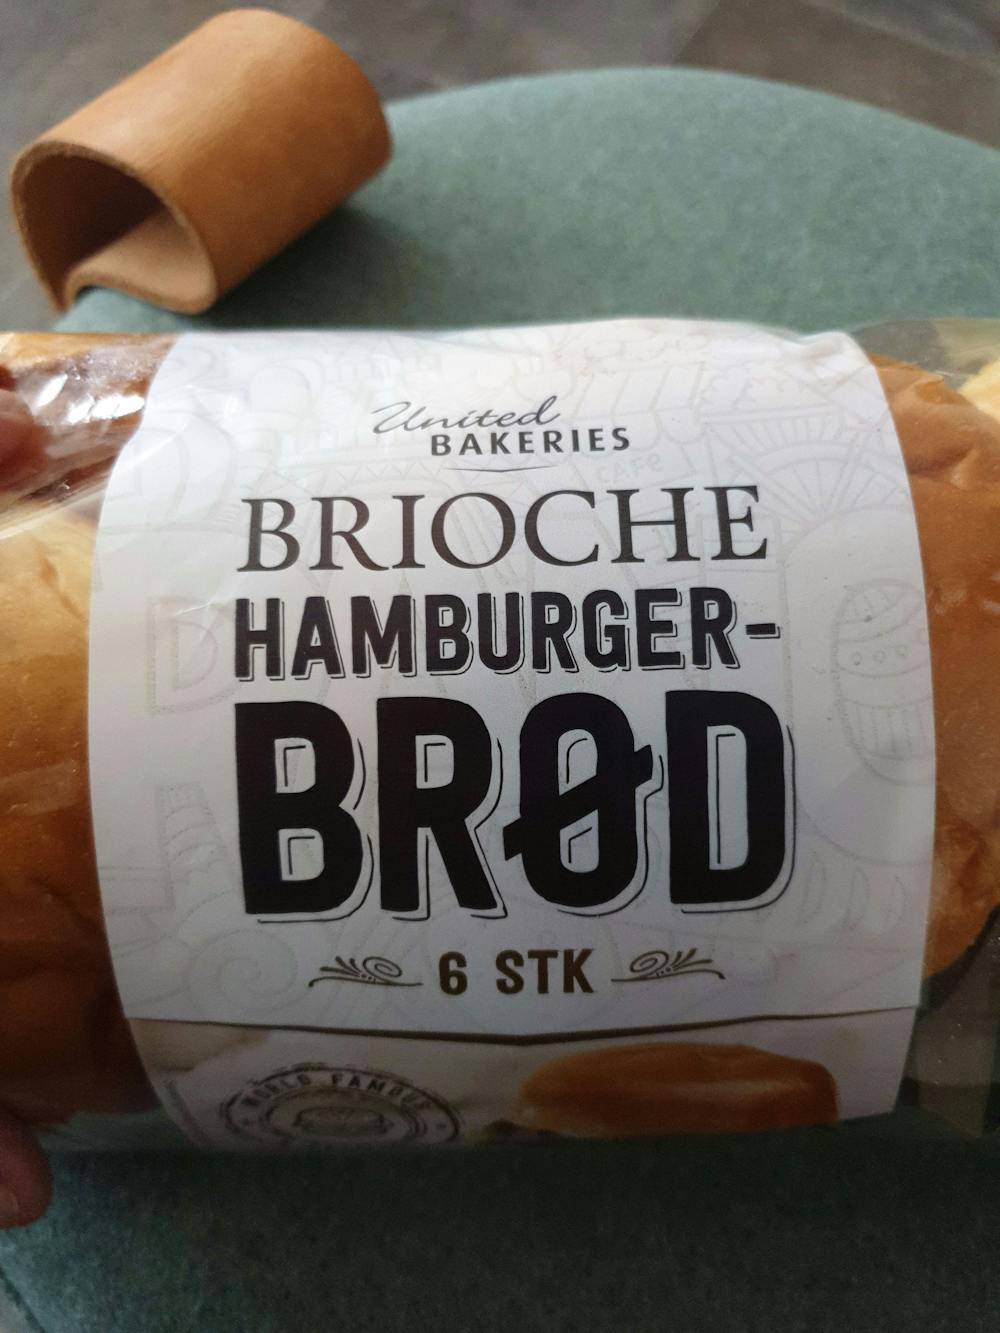 Brioche hamburgerbrød, United bakeries